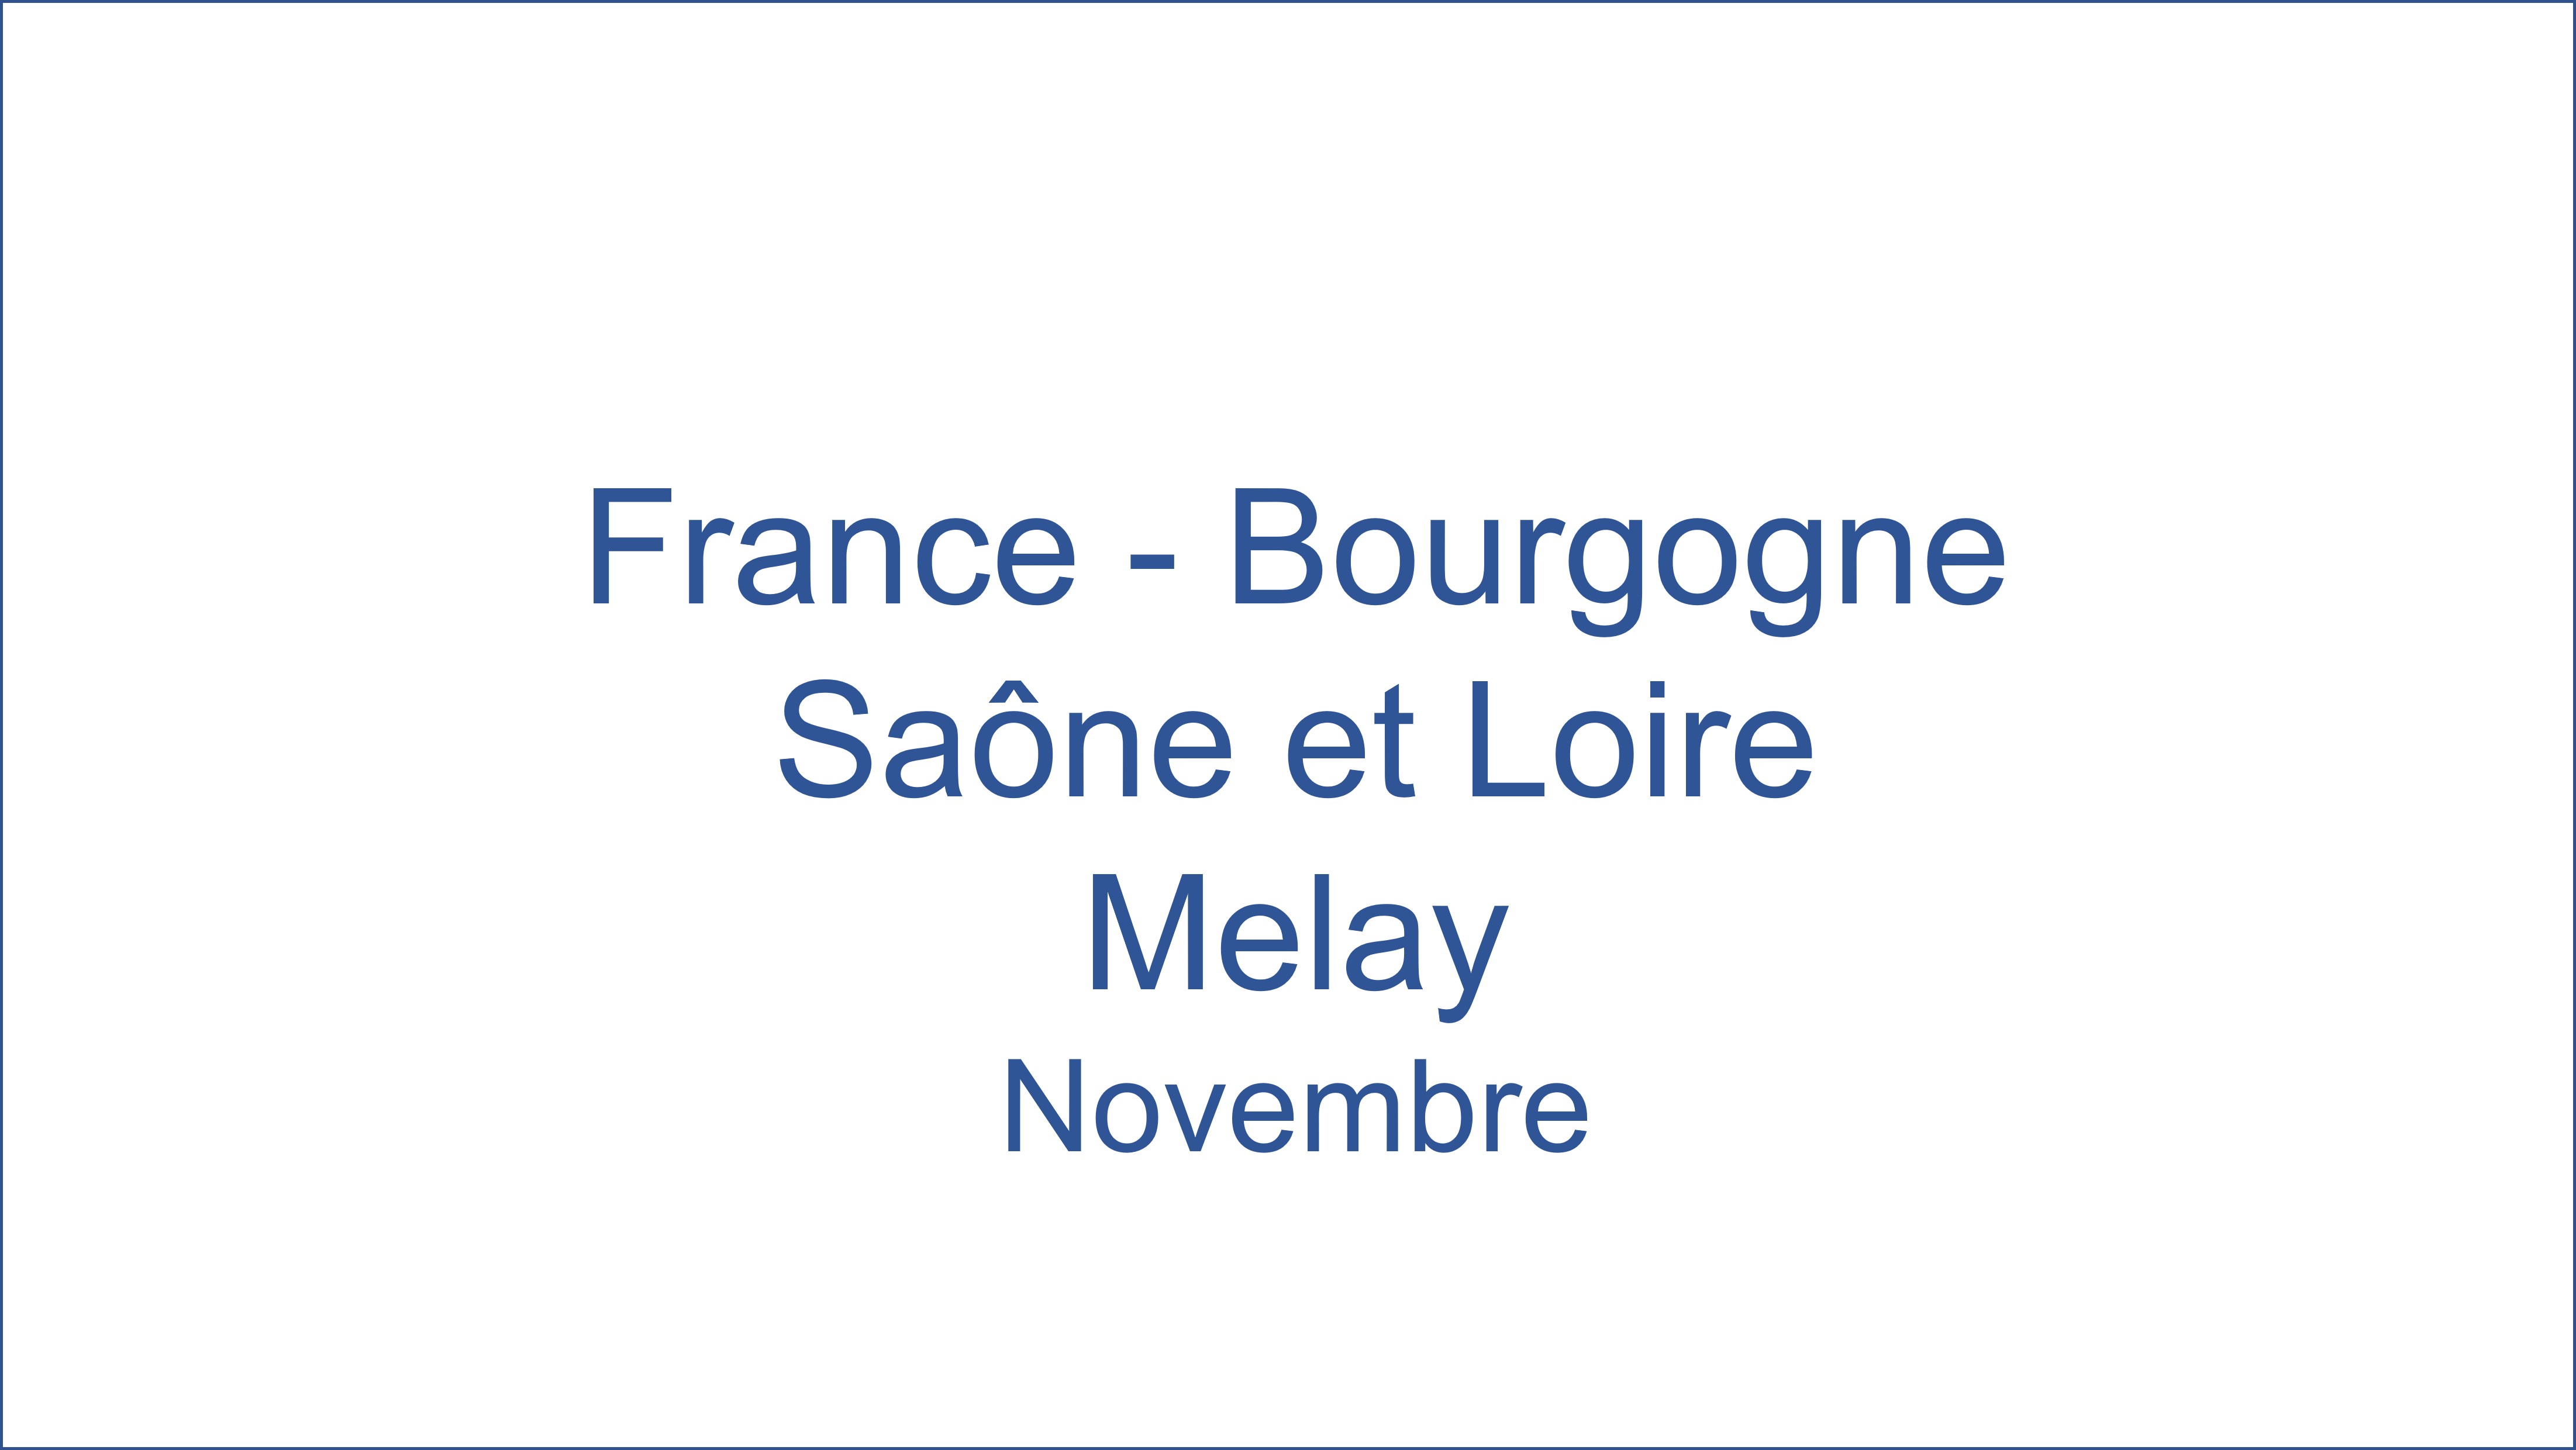 France - Bourgogne Sane et Loire Melay 11/2021